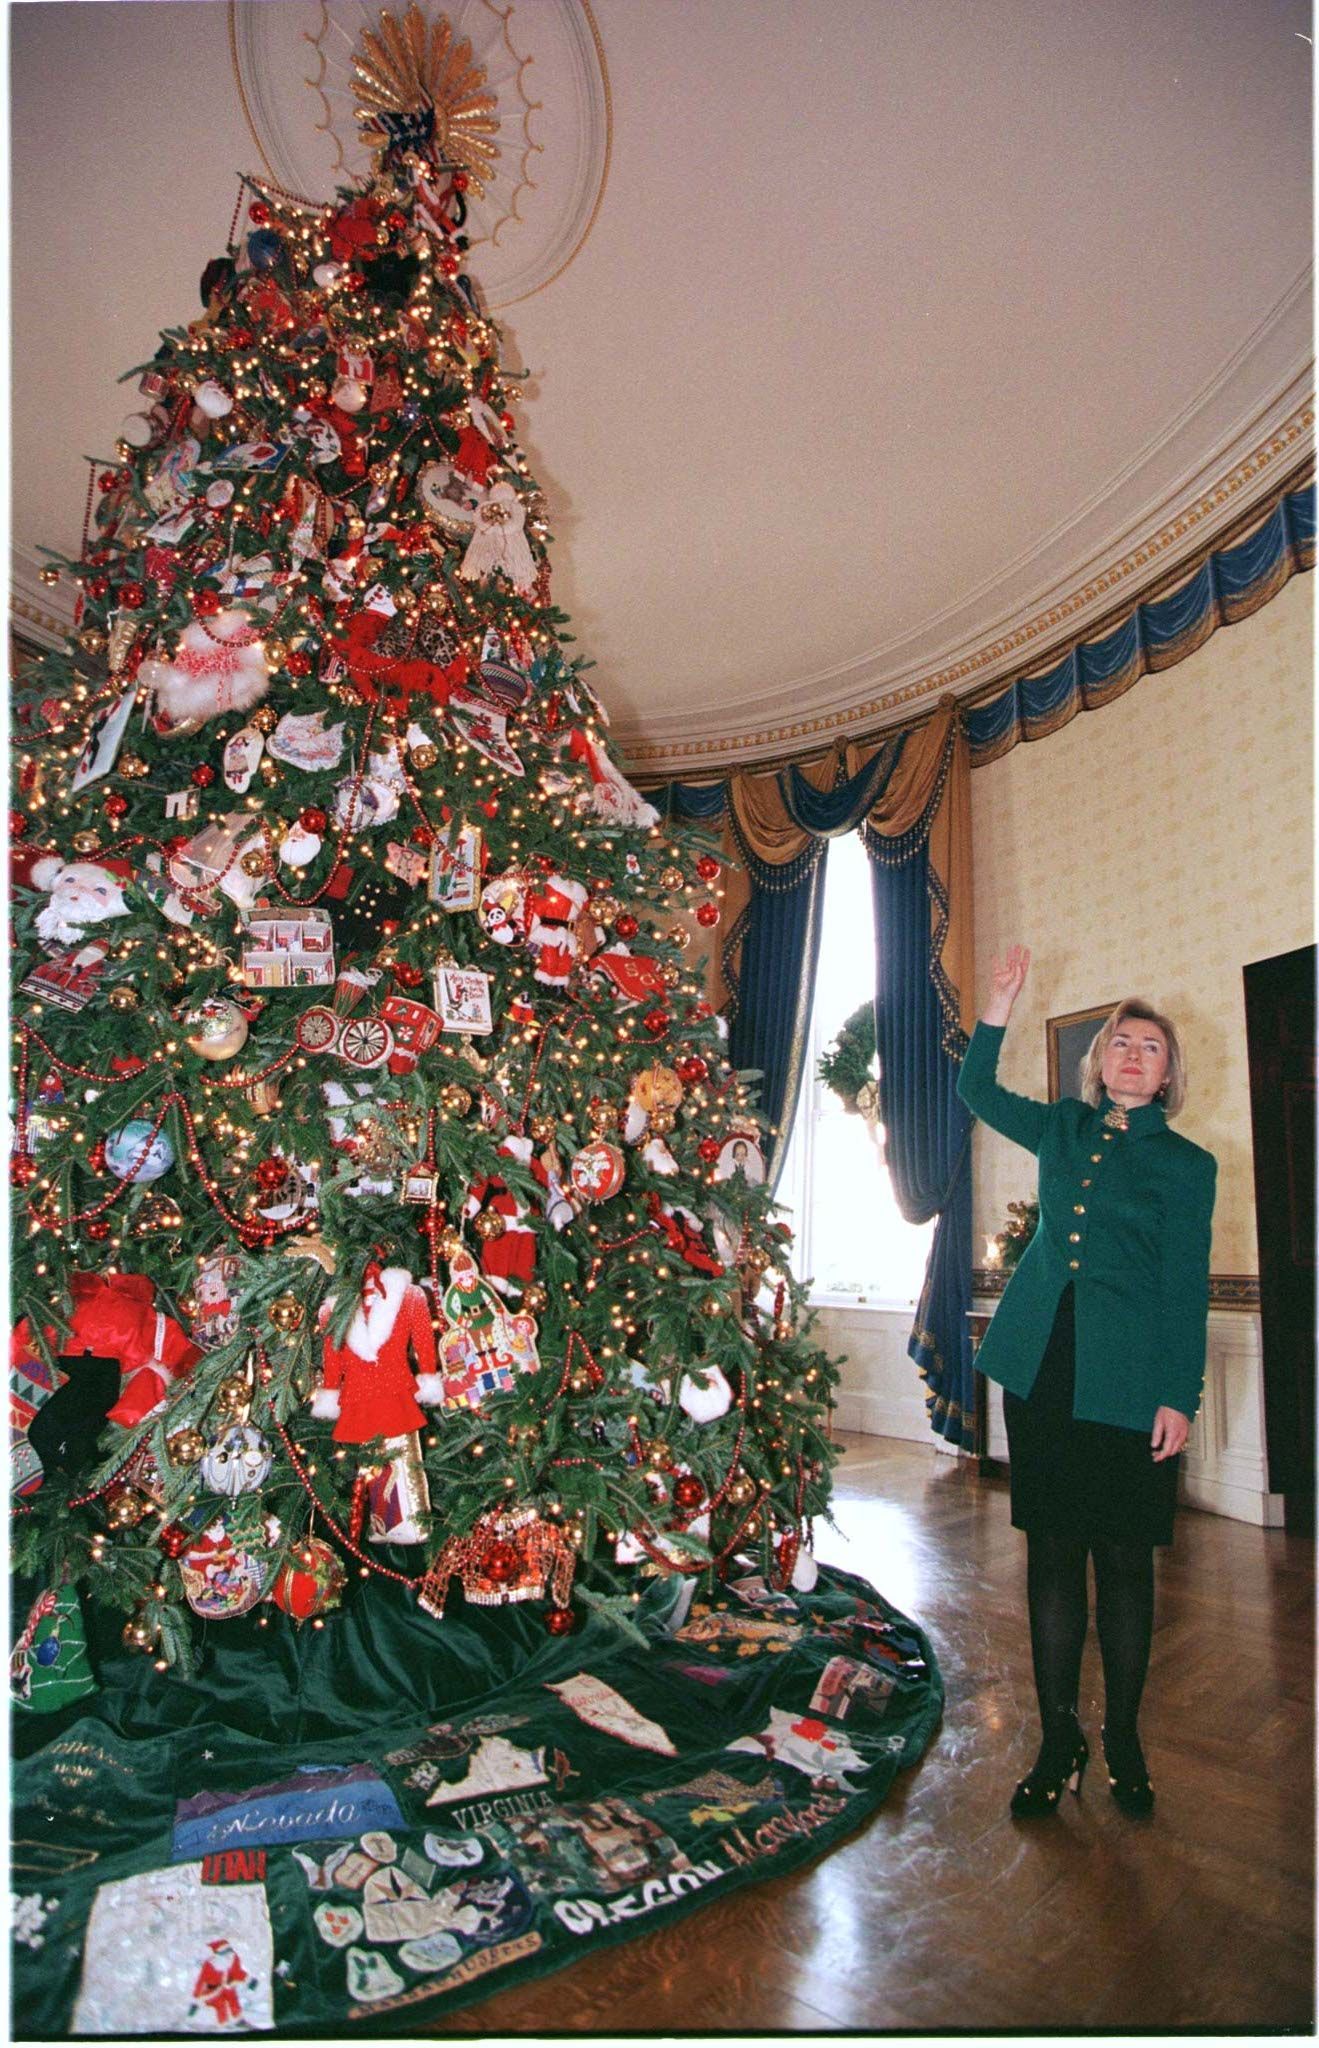 Grün schien einfach ihre Weihnachtsfarbe zu sein: Hillary Clinton neben dem offiziellen Weihnachtsbaum im Weißen Haus, 1997.